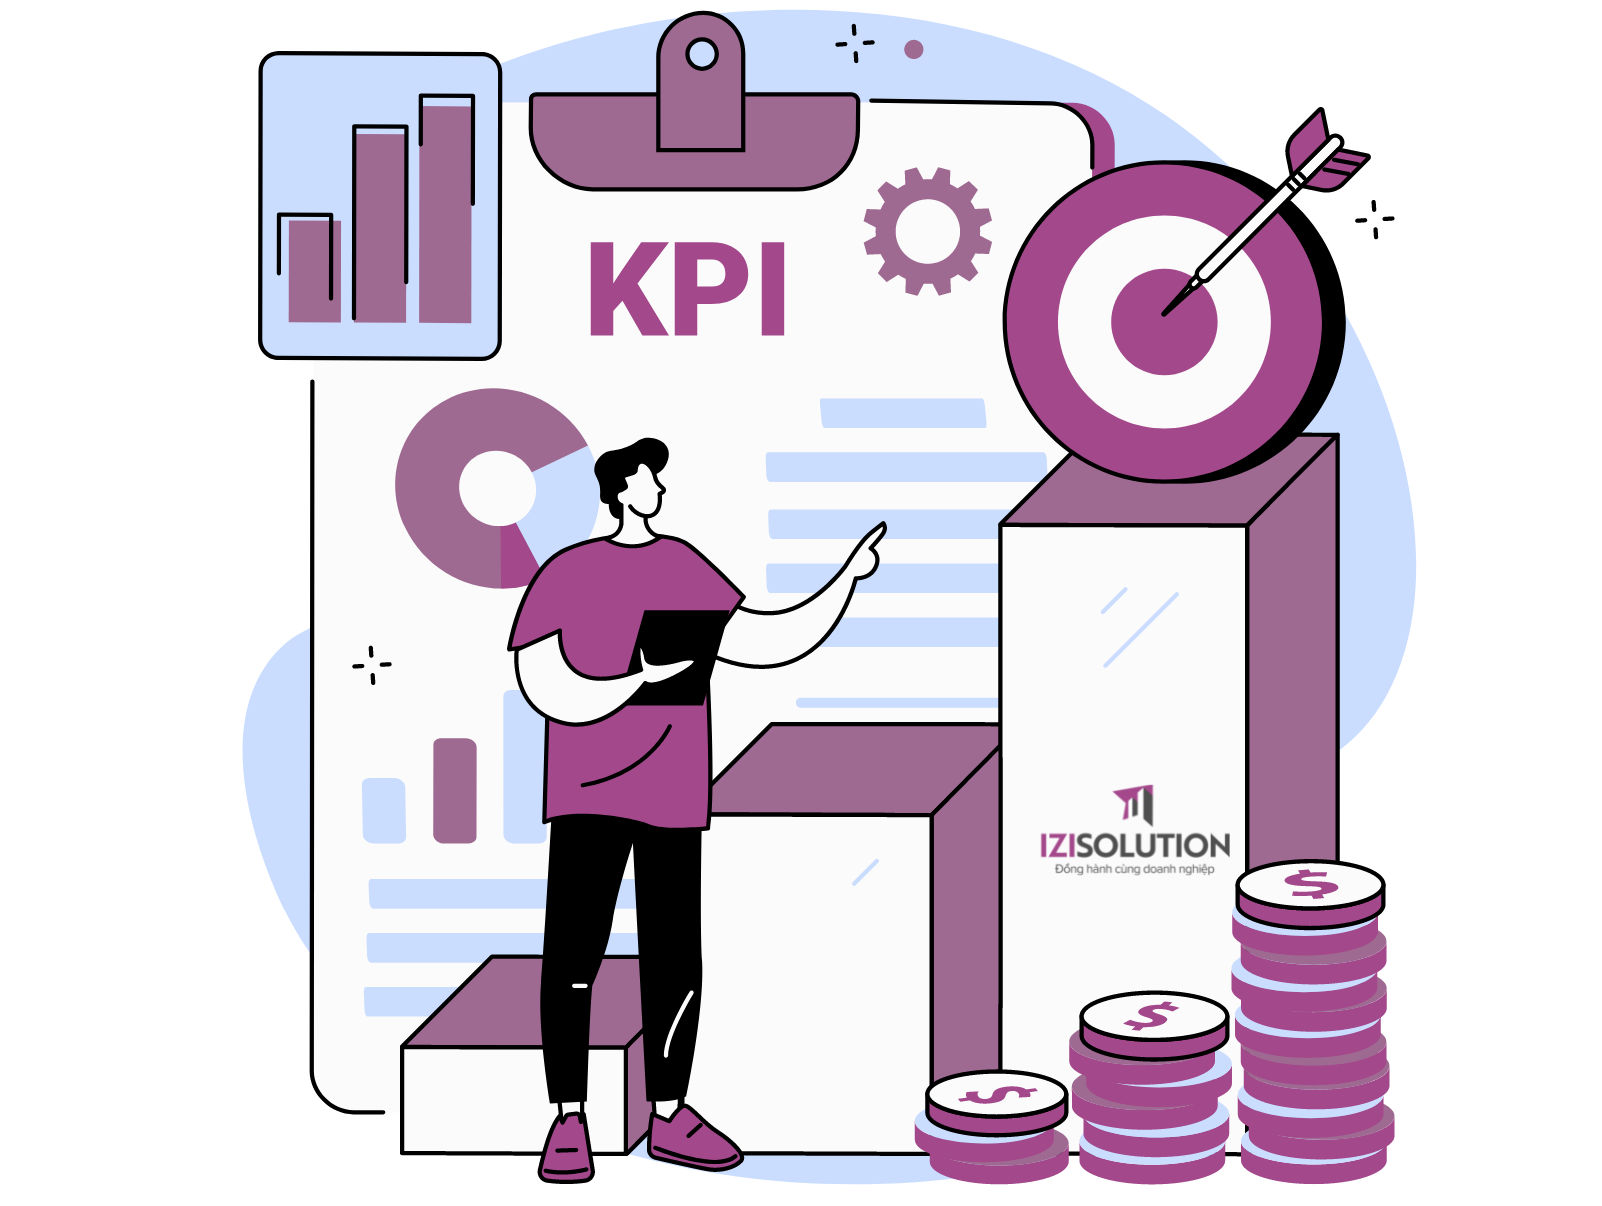 Quản lý công việc/KPI